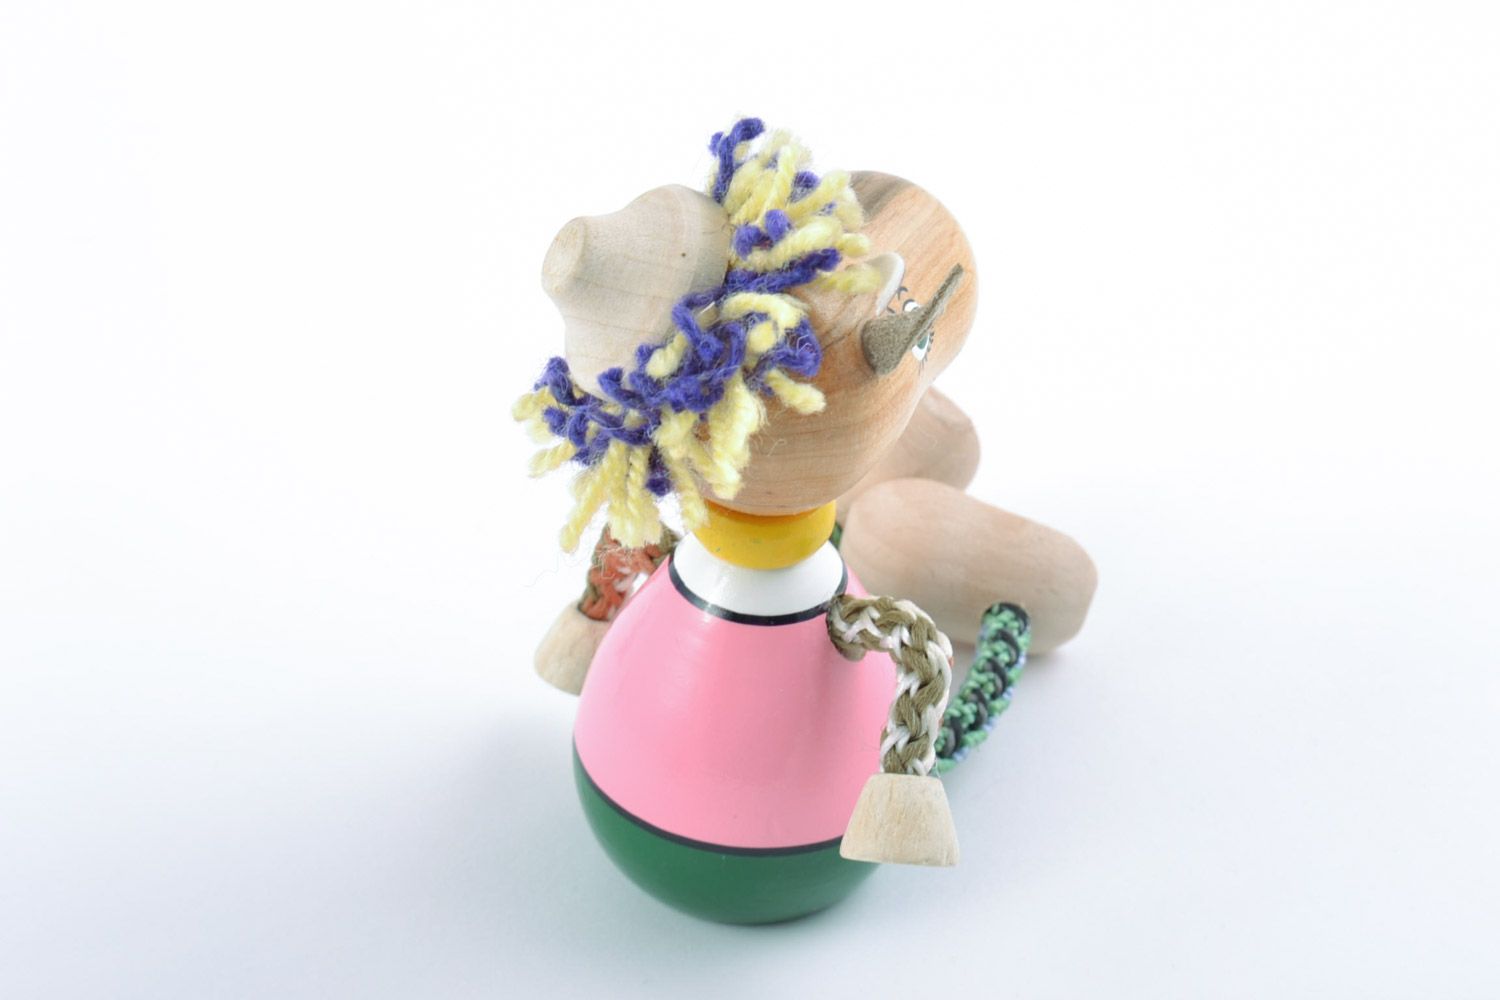 Деревянная игрушка в виде козлика ручной работы расписанная эко красками фото 4